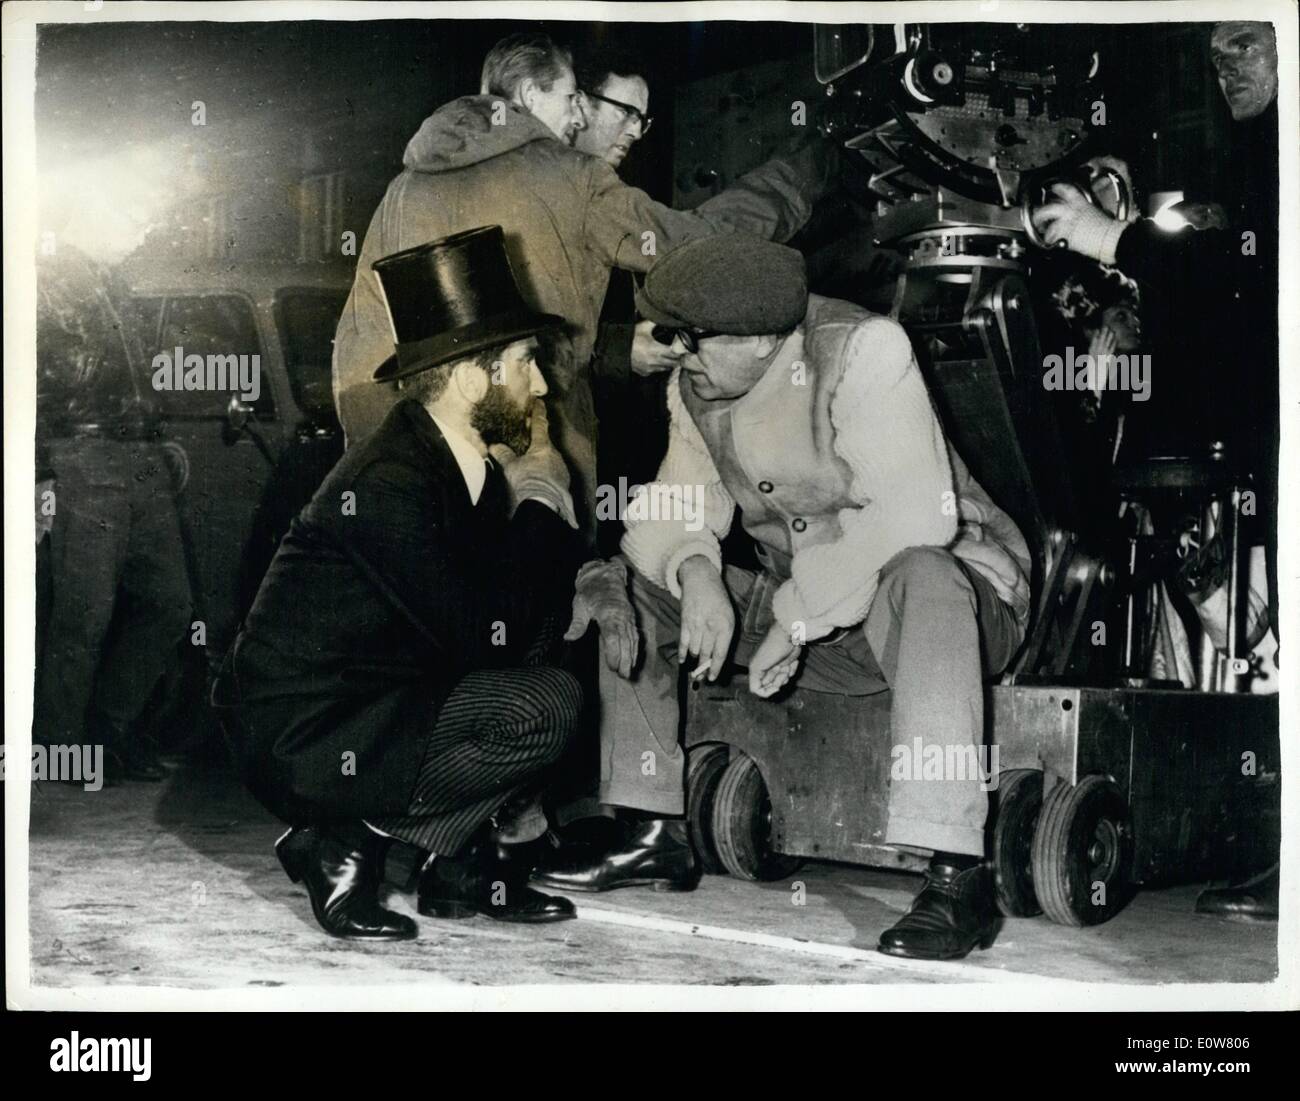 Gen 01, 1962 - Le riprese di Freud con Montgomery Clift nel ruolo del titolo. Serio. Montgomery Clift come Sigmund Freud e il regista John Huston discutere il modo in cui una scena sarà girato per Freud , durante la localizzazione funzionano a Vienna per la Universal International film storia del fondatore della psicoanalisi. Il film è fatto a Monaco di Baviera e Vienna. JSS/Keystone Foto Stock